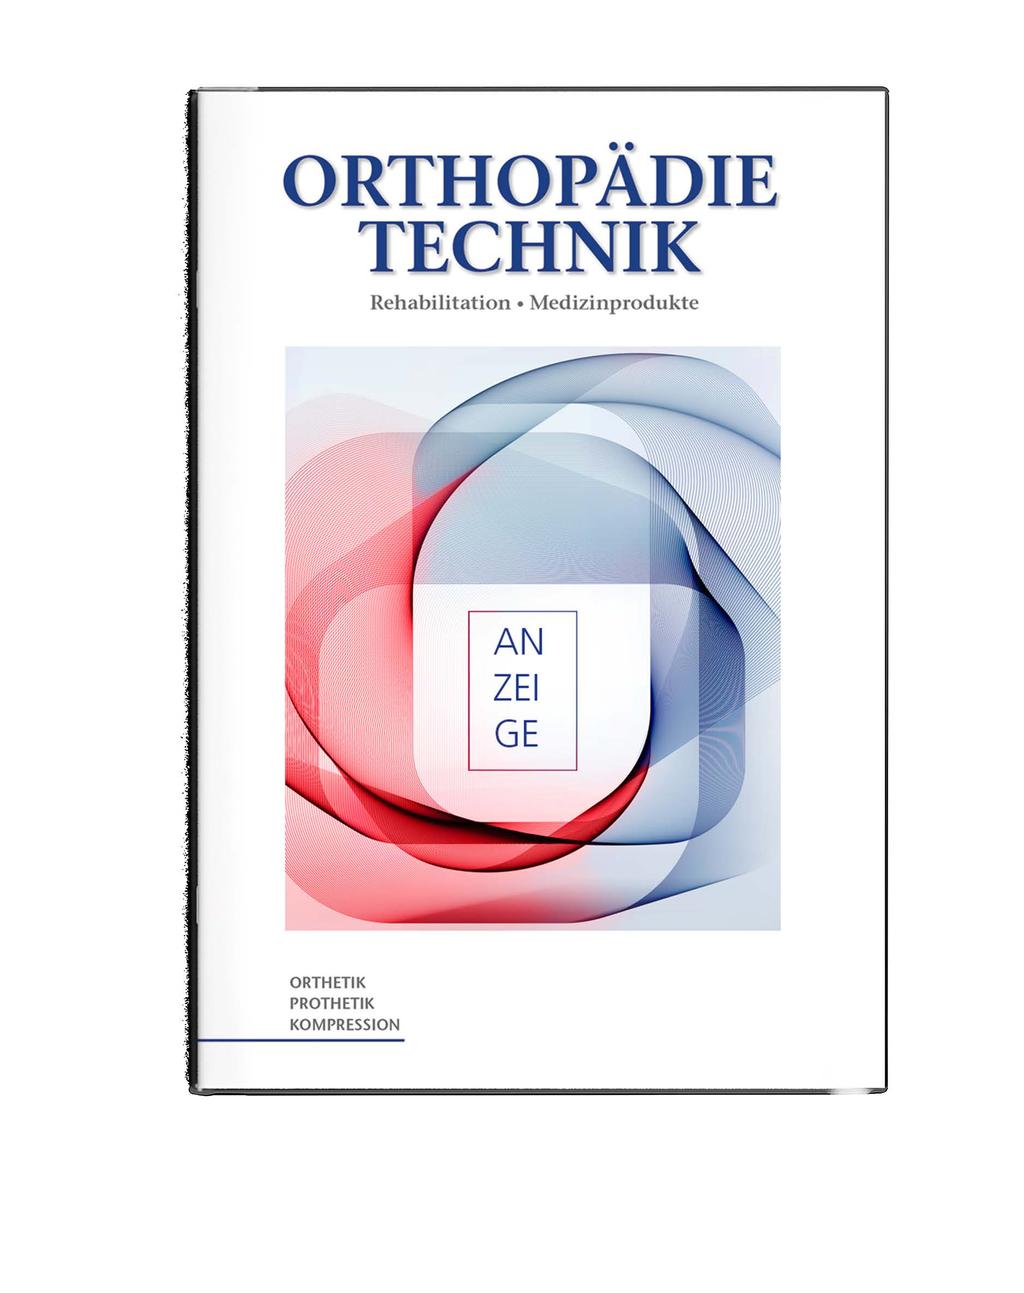 Noch mehr Infos unter: ORTHOPÄDIE TECHNIK Offizielles Fachorgan des Bundesinnungsverbandes für Orthopädie-Technik